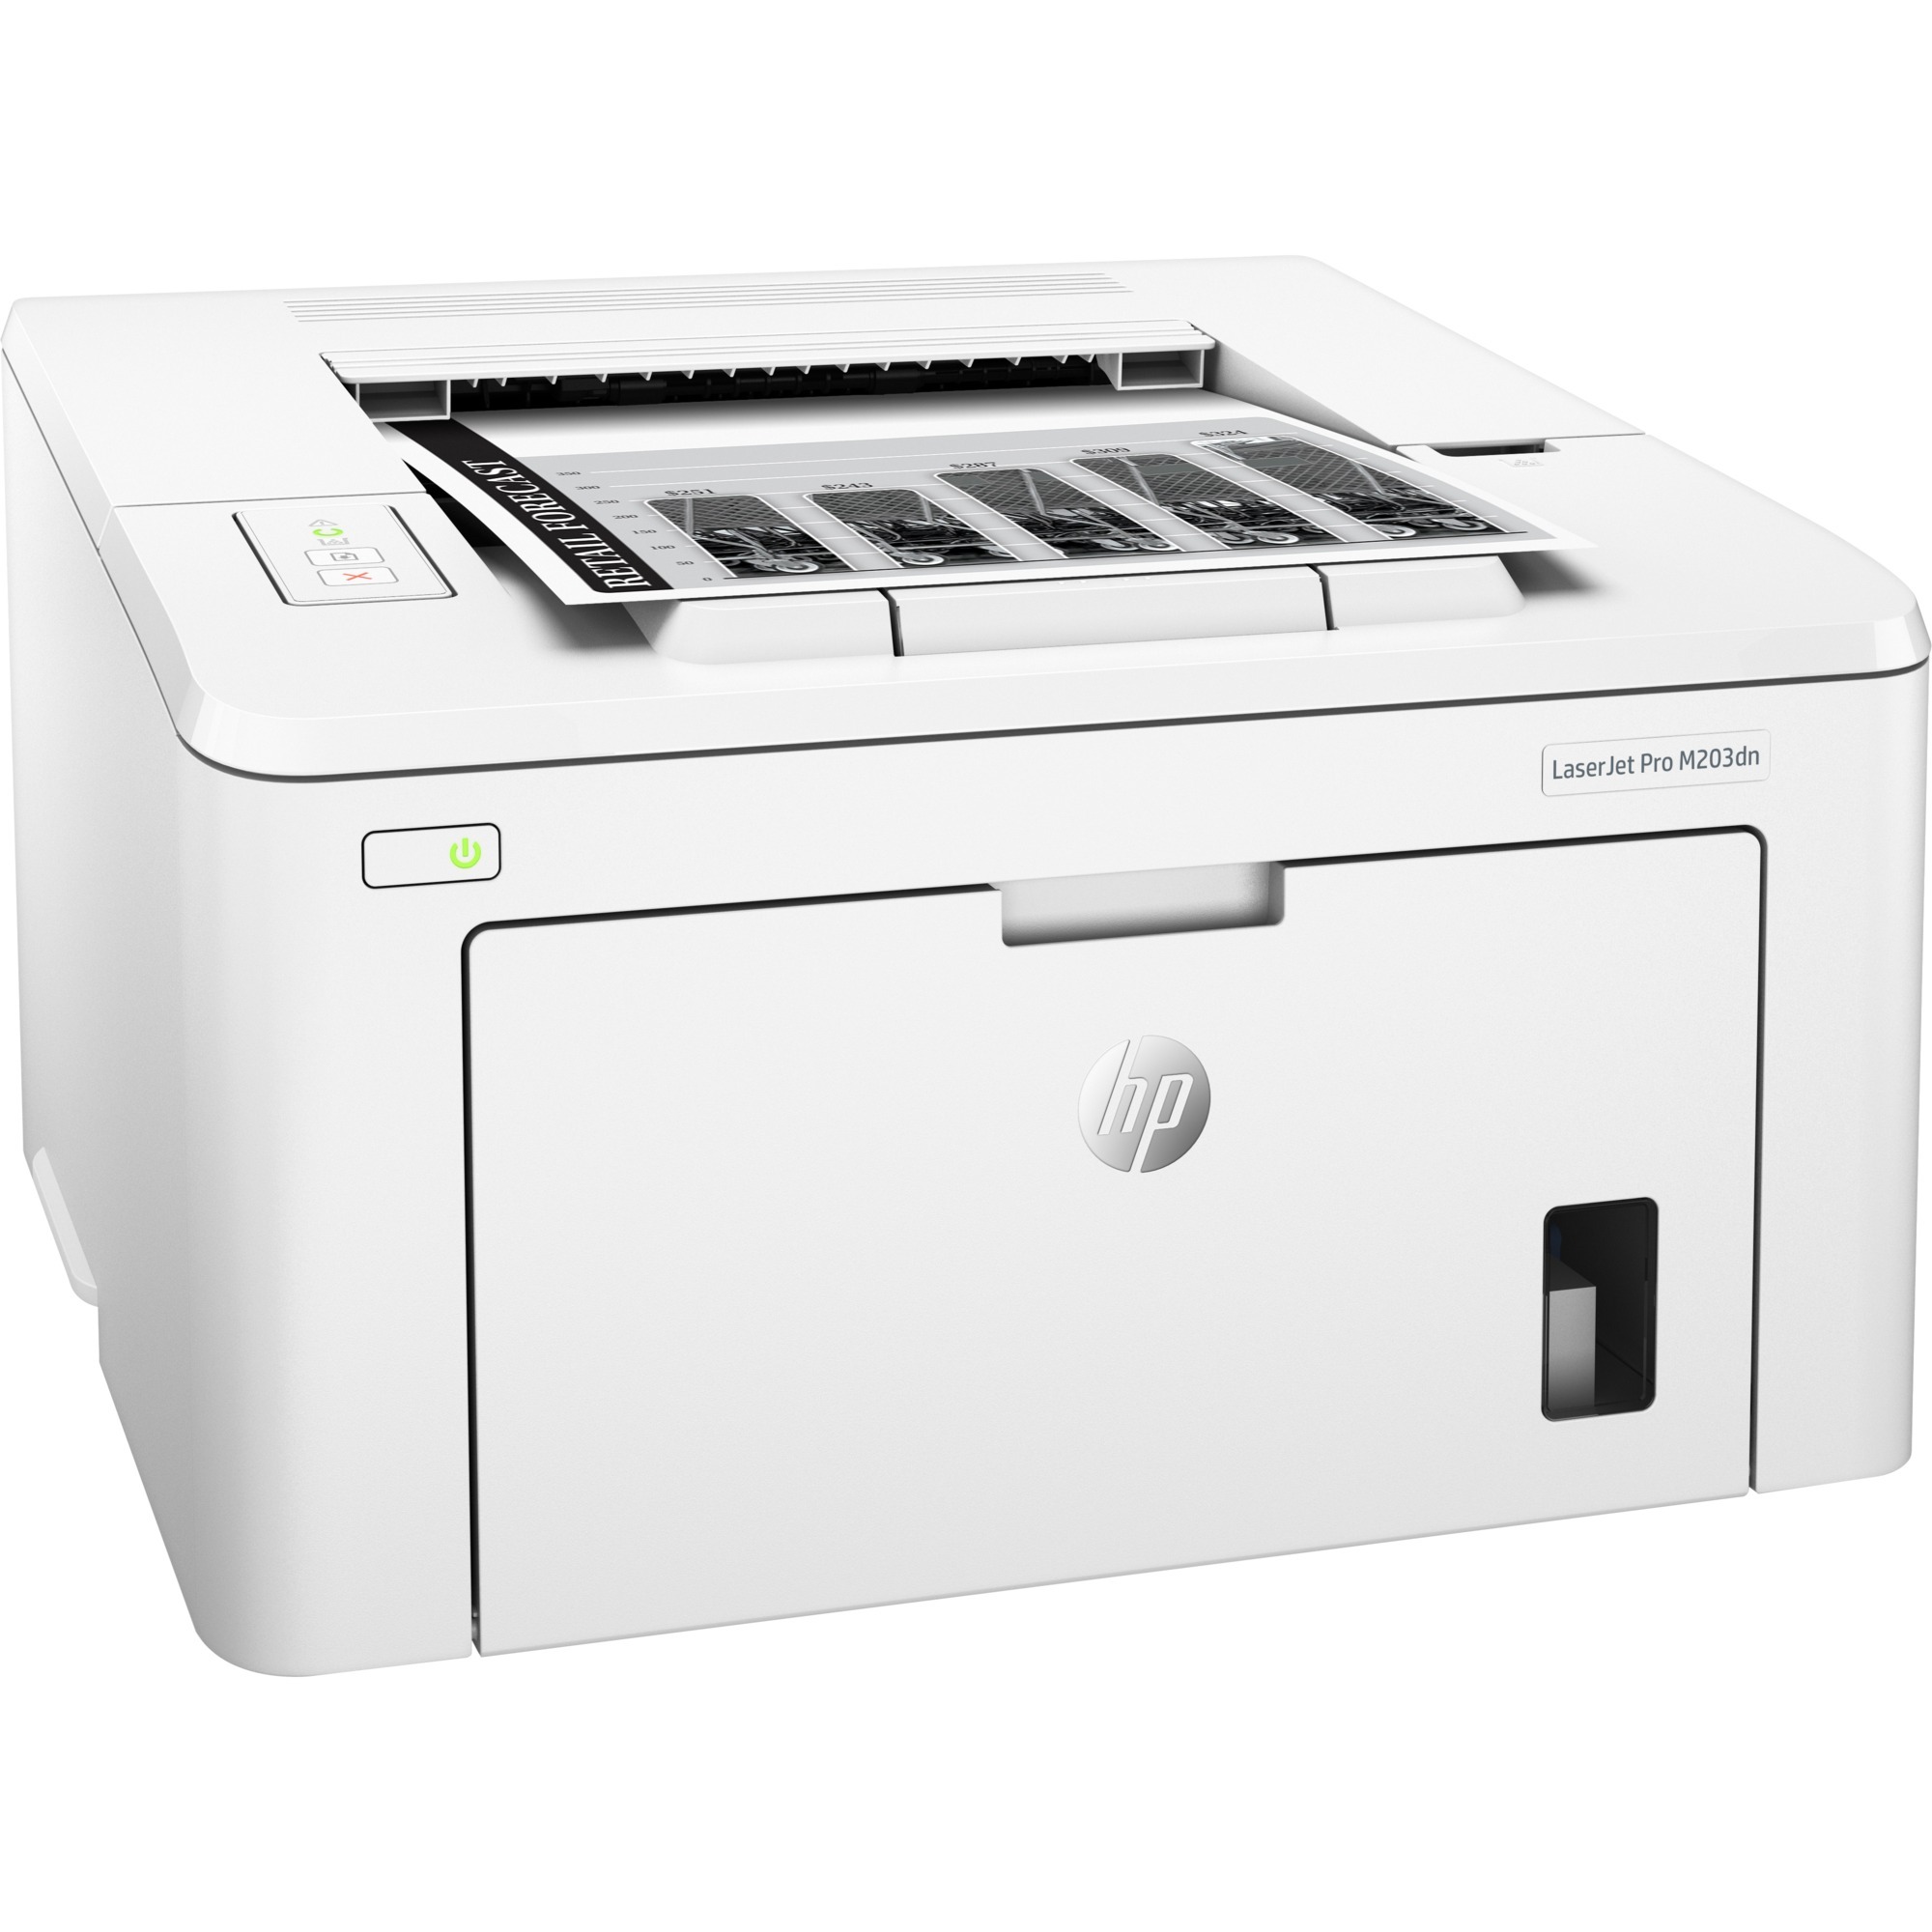 Image of Alternate - LaserJet Pro M203dn, Laserdrucker online einkaufen bei Alternate